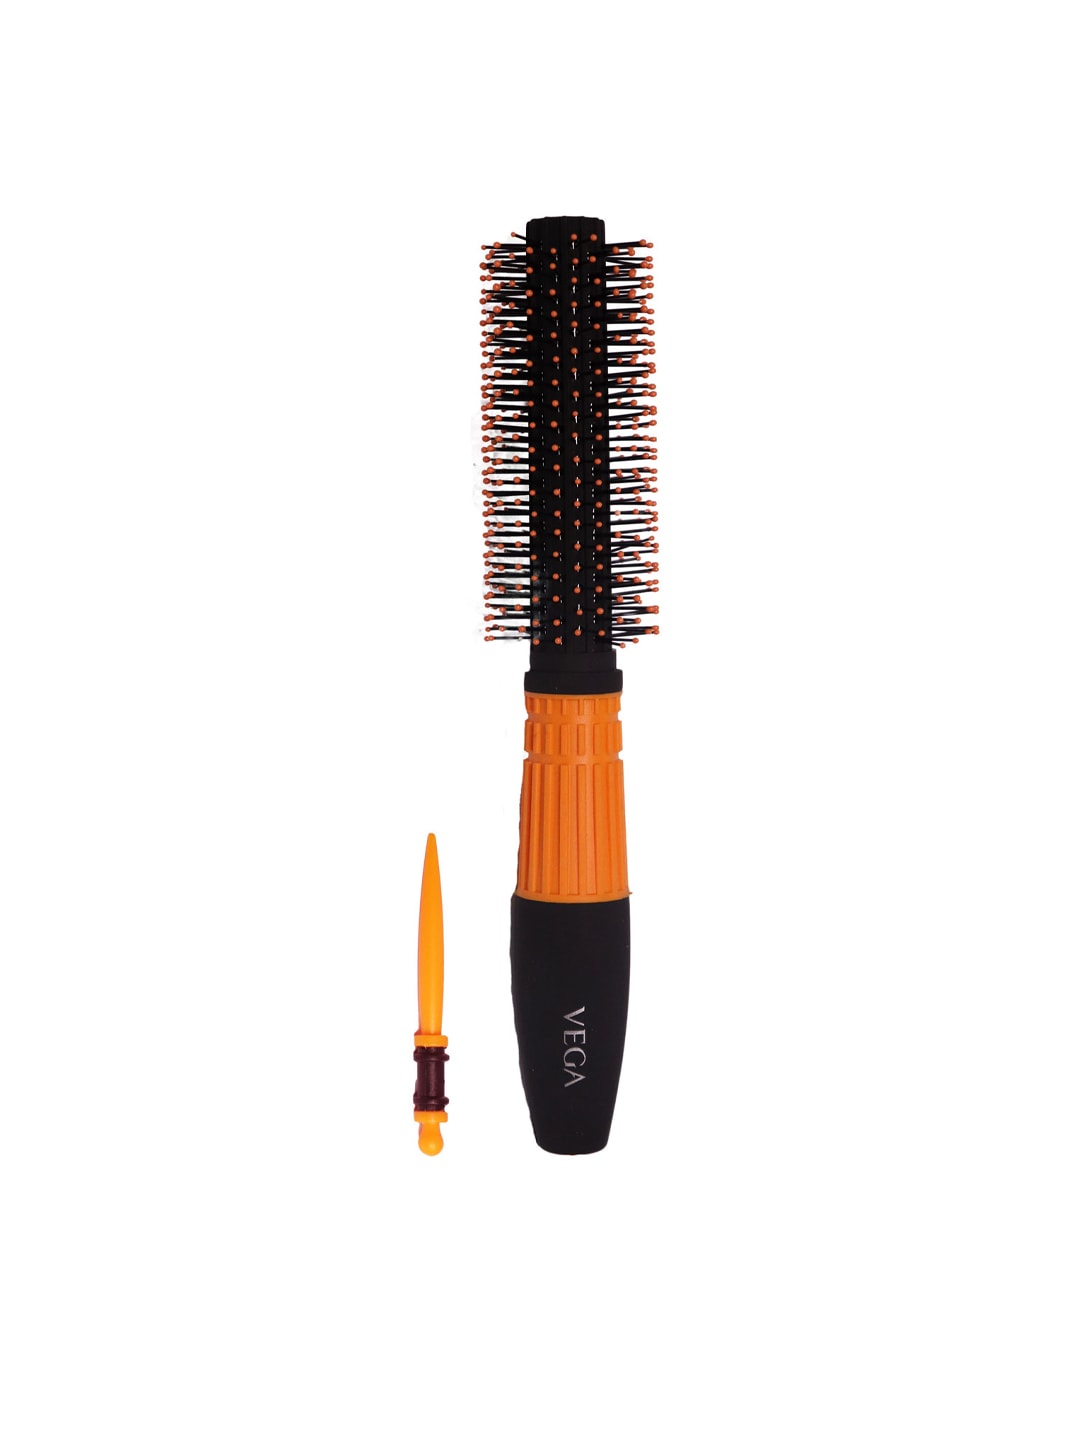 VEGA Unisex Black & Orange Round Brush E15-RB Price in India